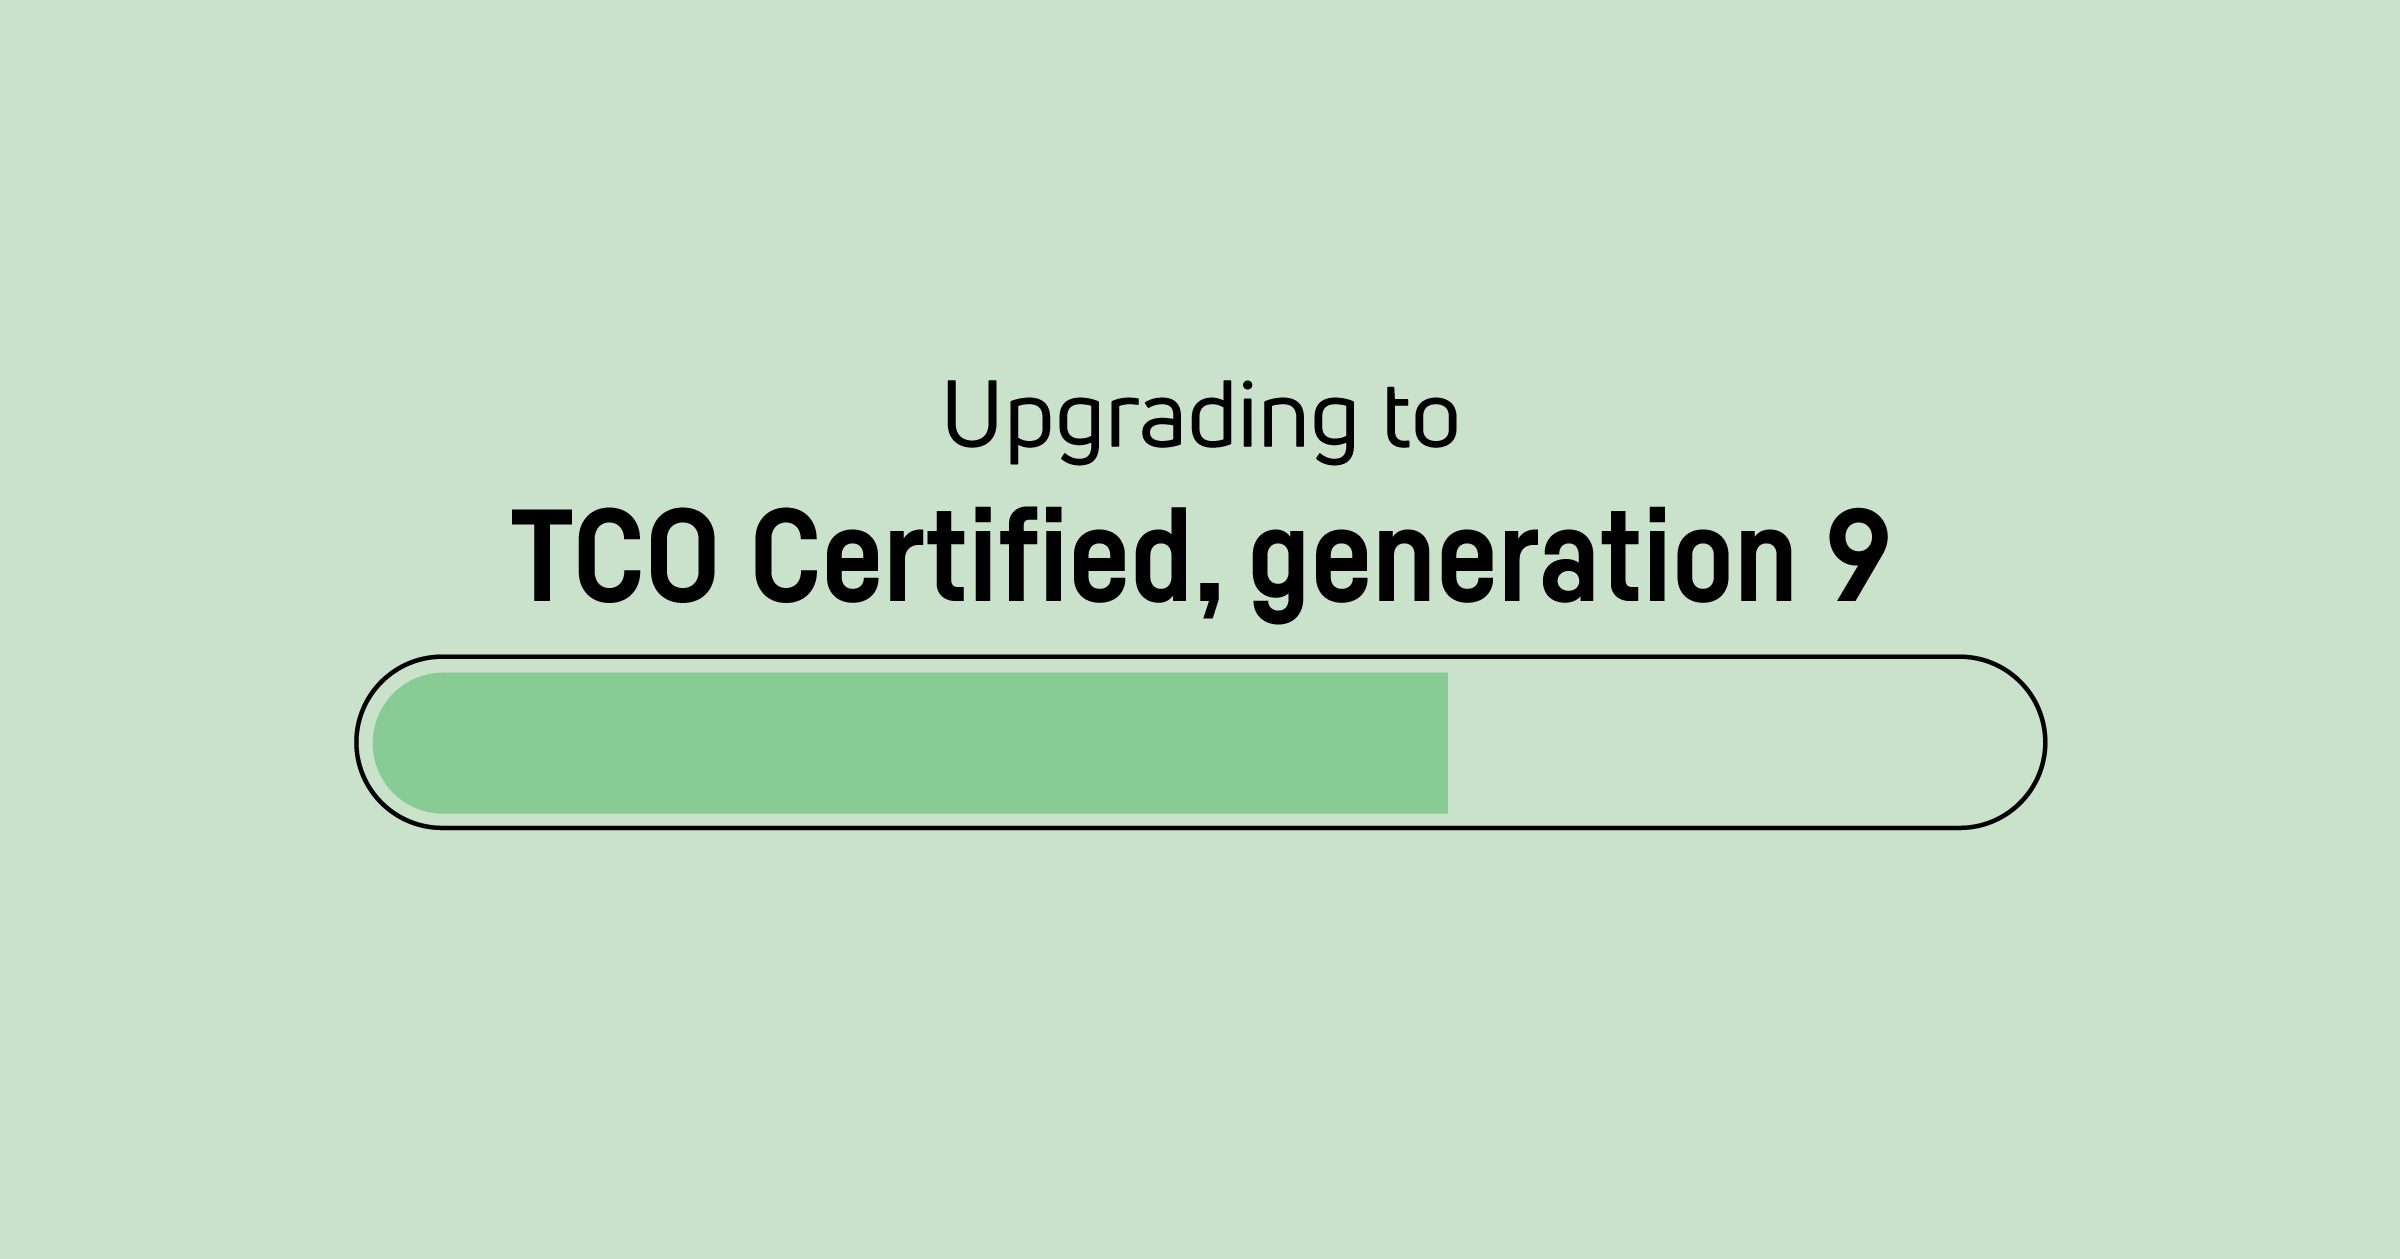 Dags att uppgradera TCO Certified, generation 8 certifikat